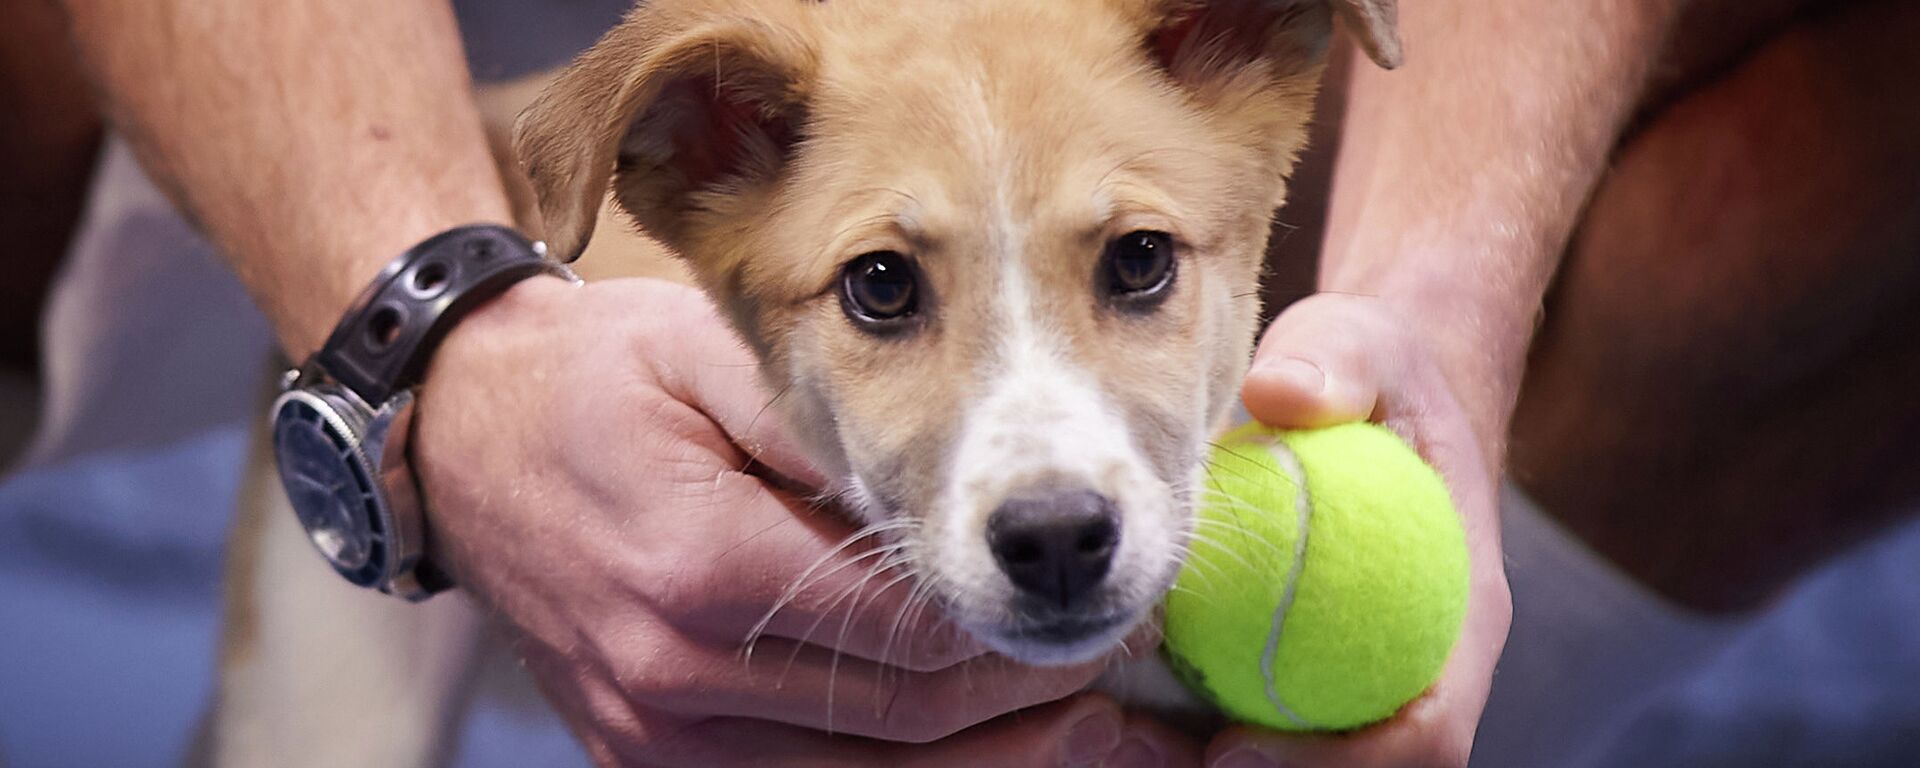 Теннисисты встретились с собаками на корте Национального теннисного центра, чтобы поддержать работу волонтеров и городских приютов - Sputnik Казахстан, 1920, 01.03.2021